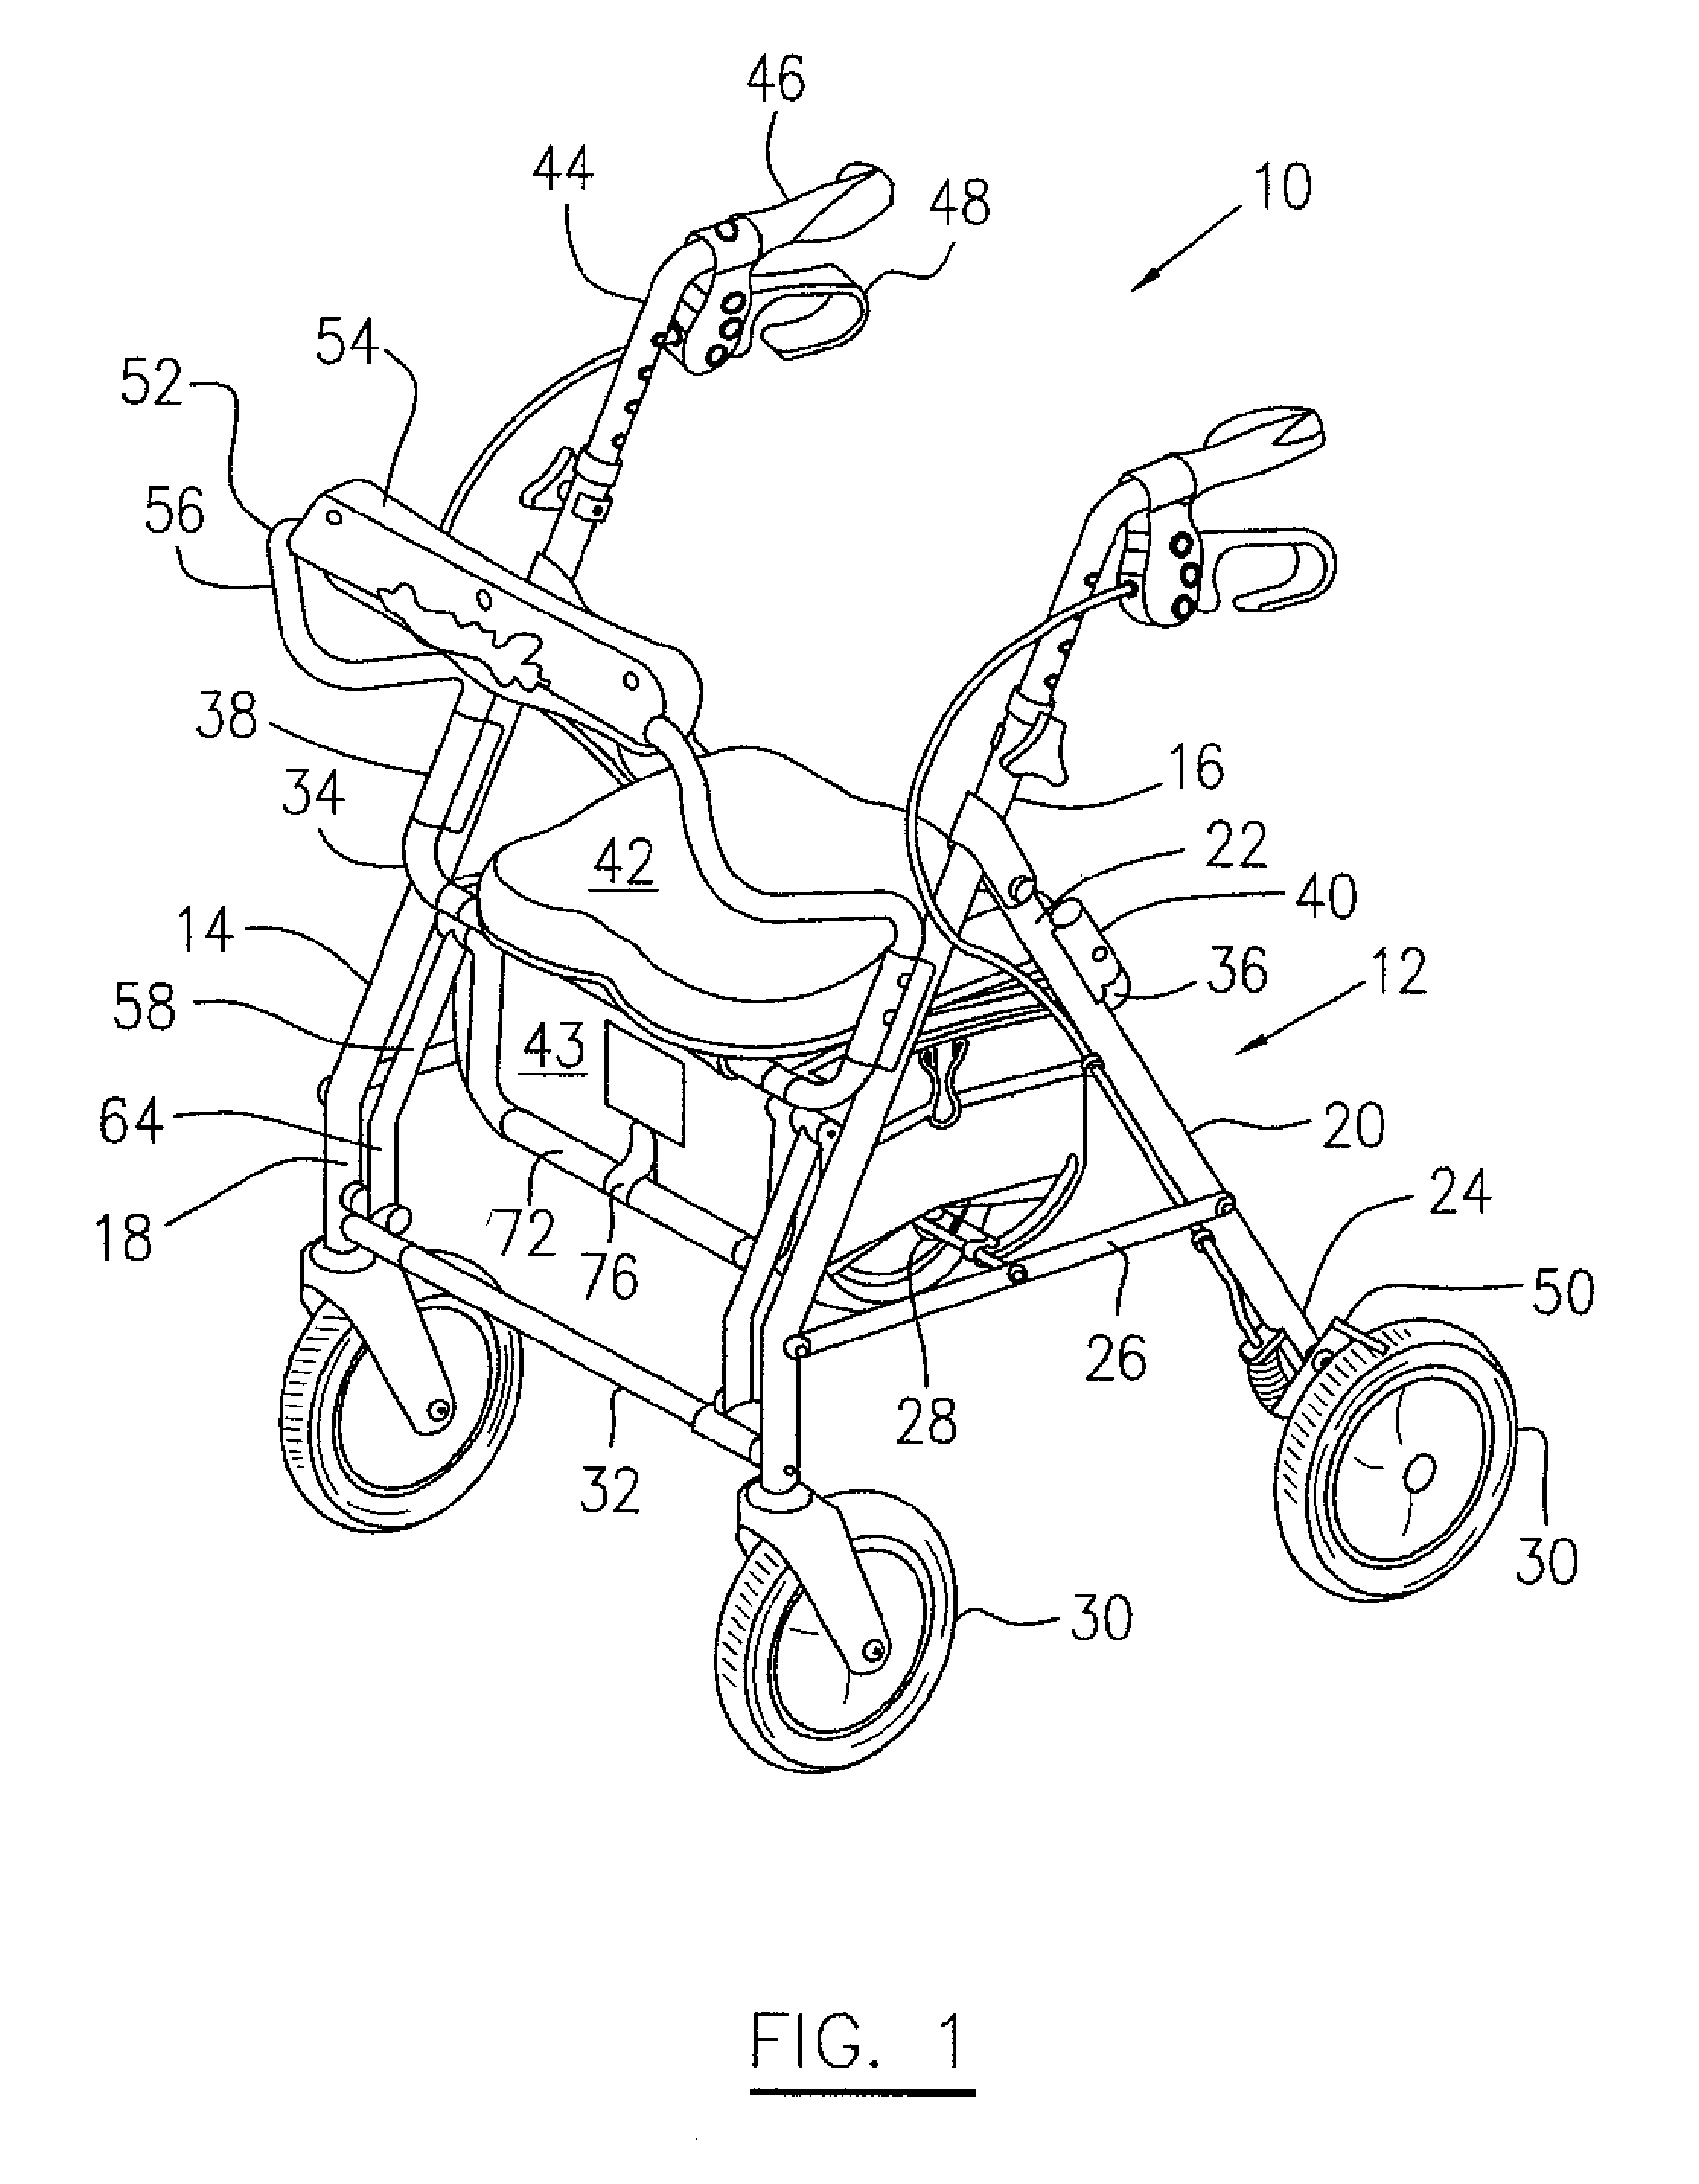 Height adjustable rolling walker for transportation seating